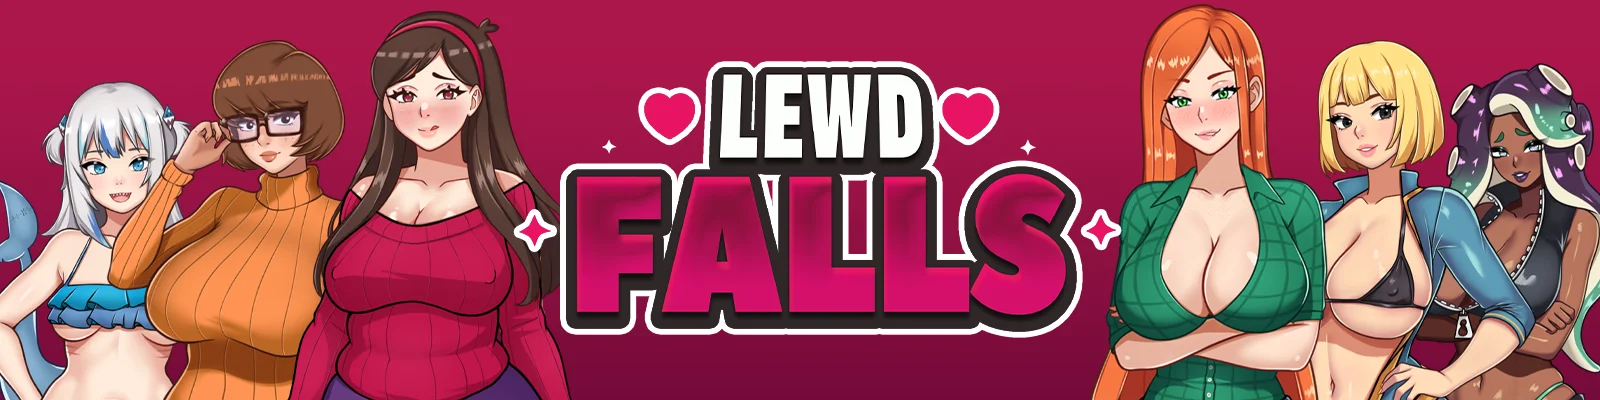 Lewd Falls